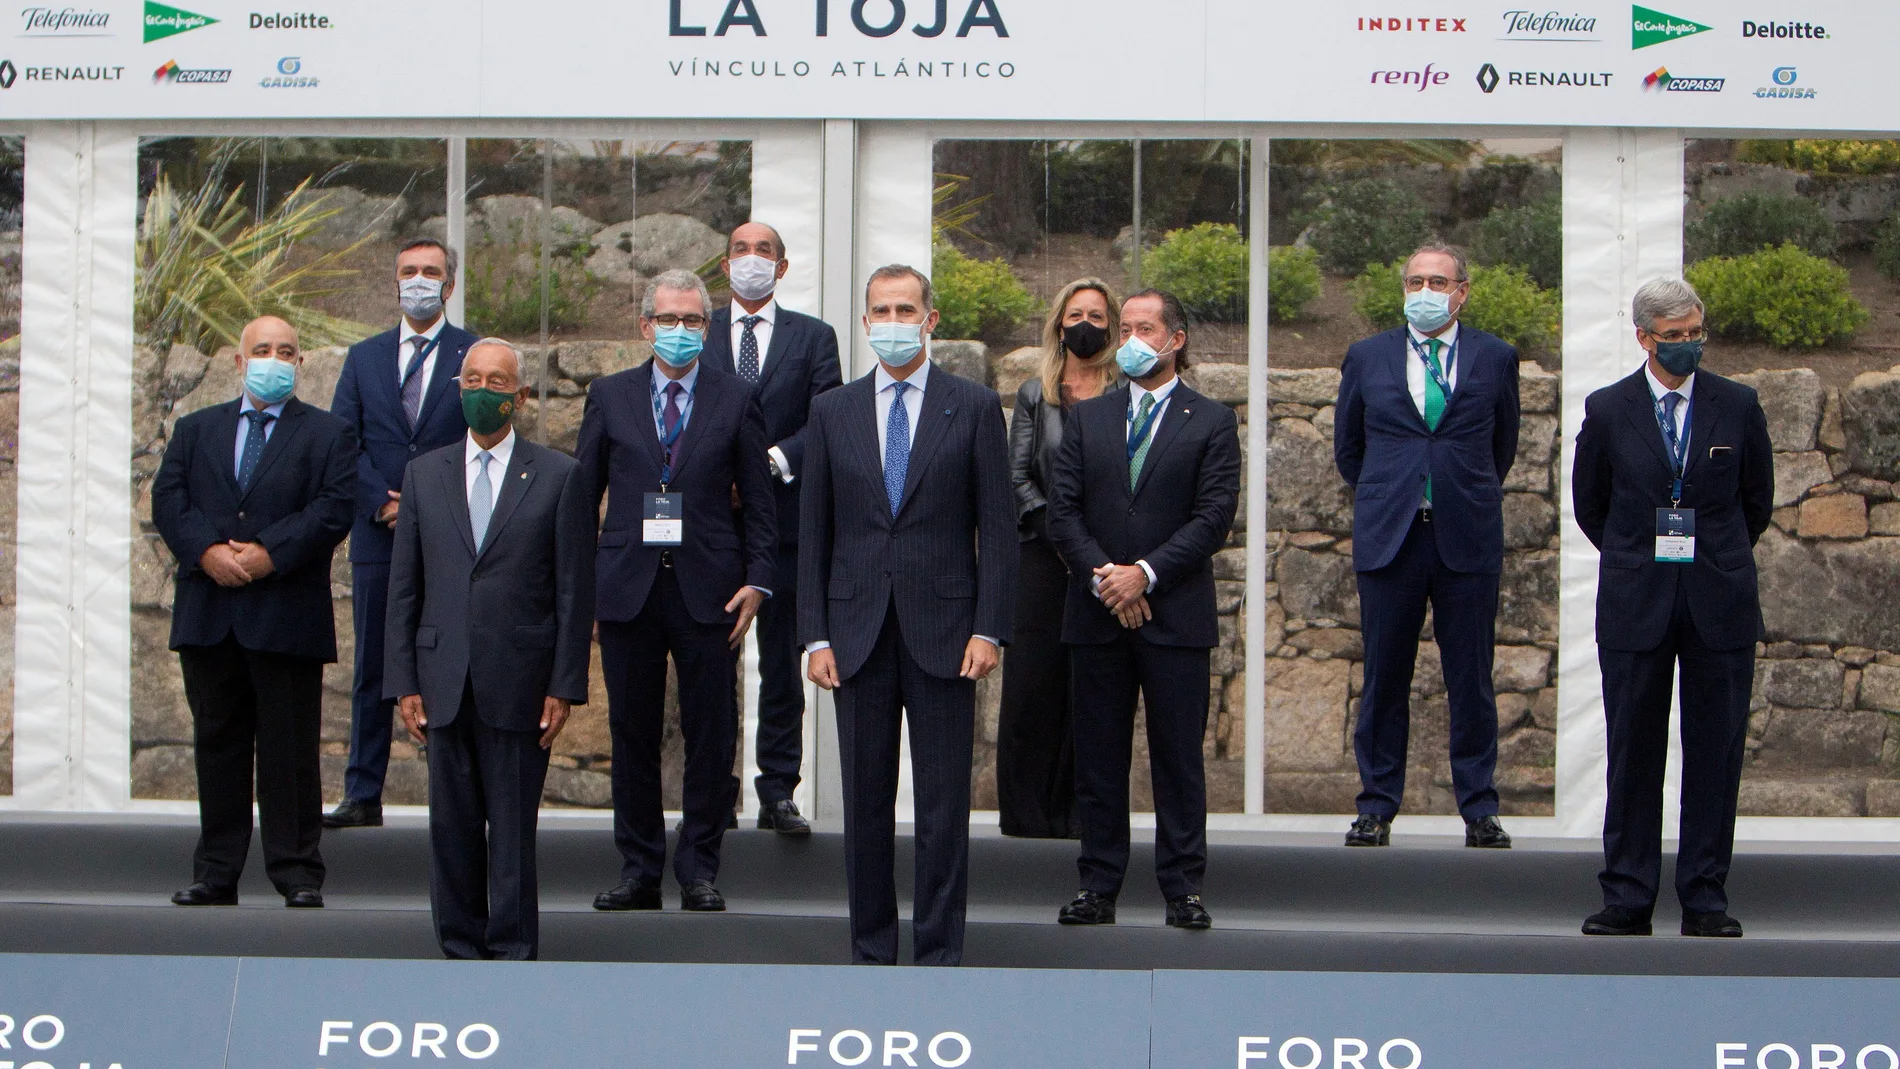 El rey Felipe VI junto al presidente de Portugal, Marcelo Rebelo de Sousa (3i), posaron con otros asistentes ayer en la inauguración del II Foro La Toja-Vínculo Atlántico